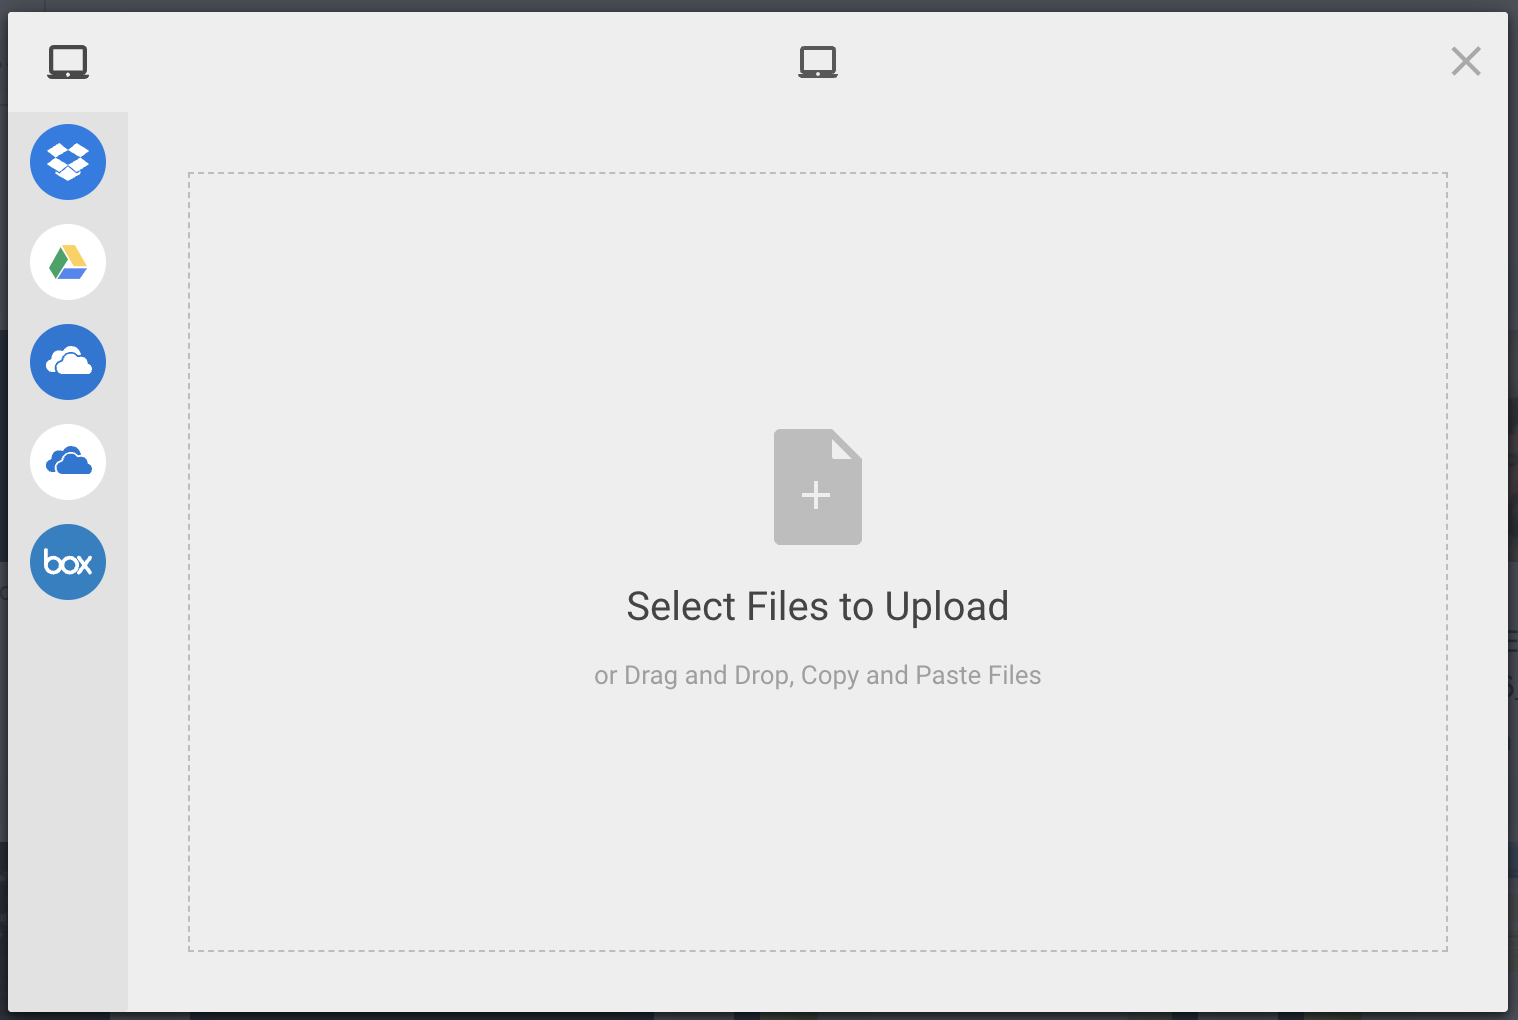 File upload prompt